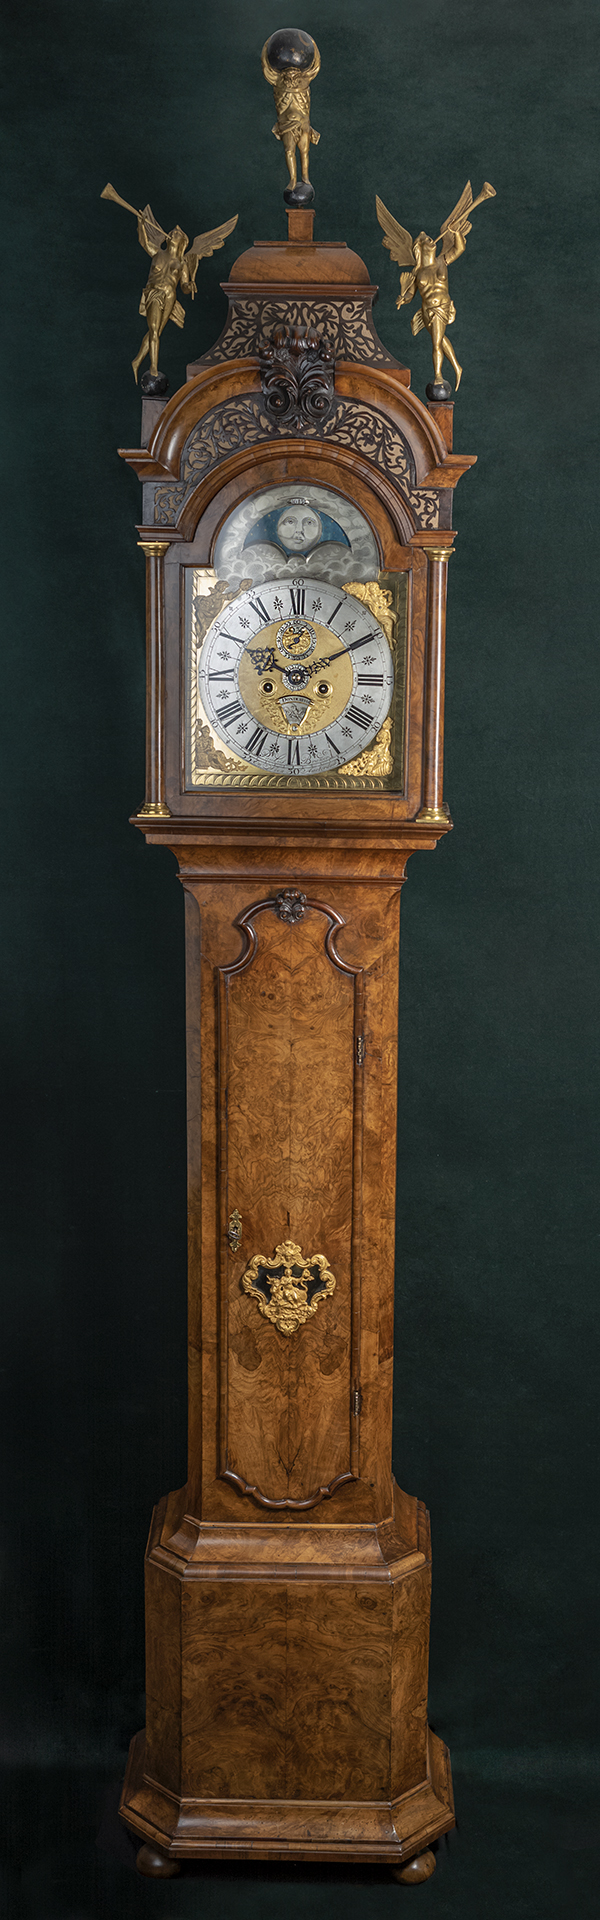 Amsterdams Staand Horloge gesigneerd Paulus Bramer en Amsterdam ca 1750 - Eward Ruyter